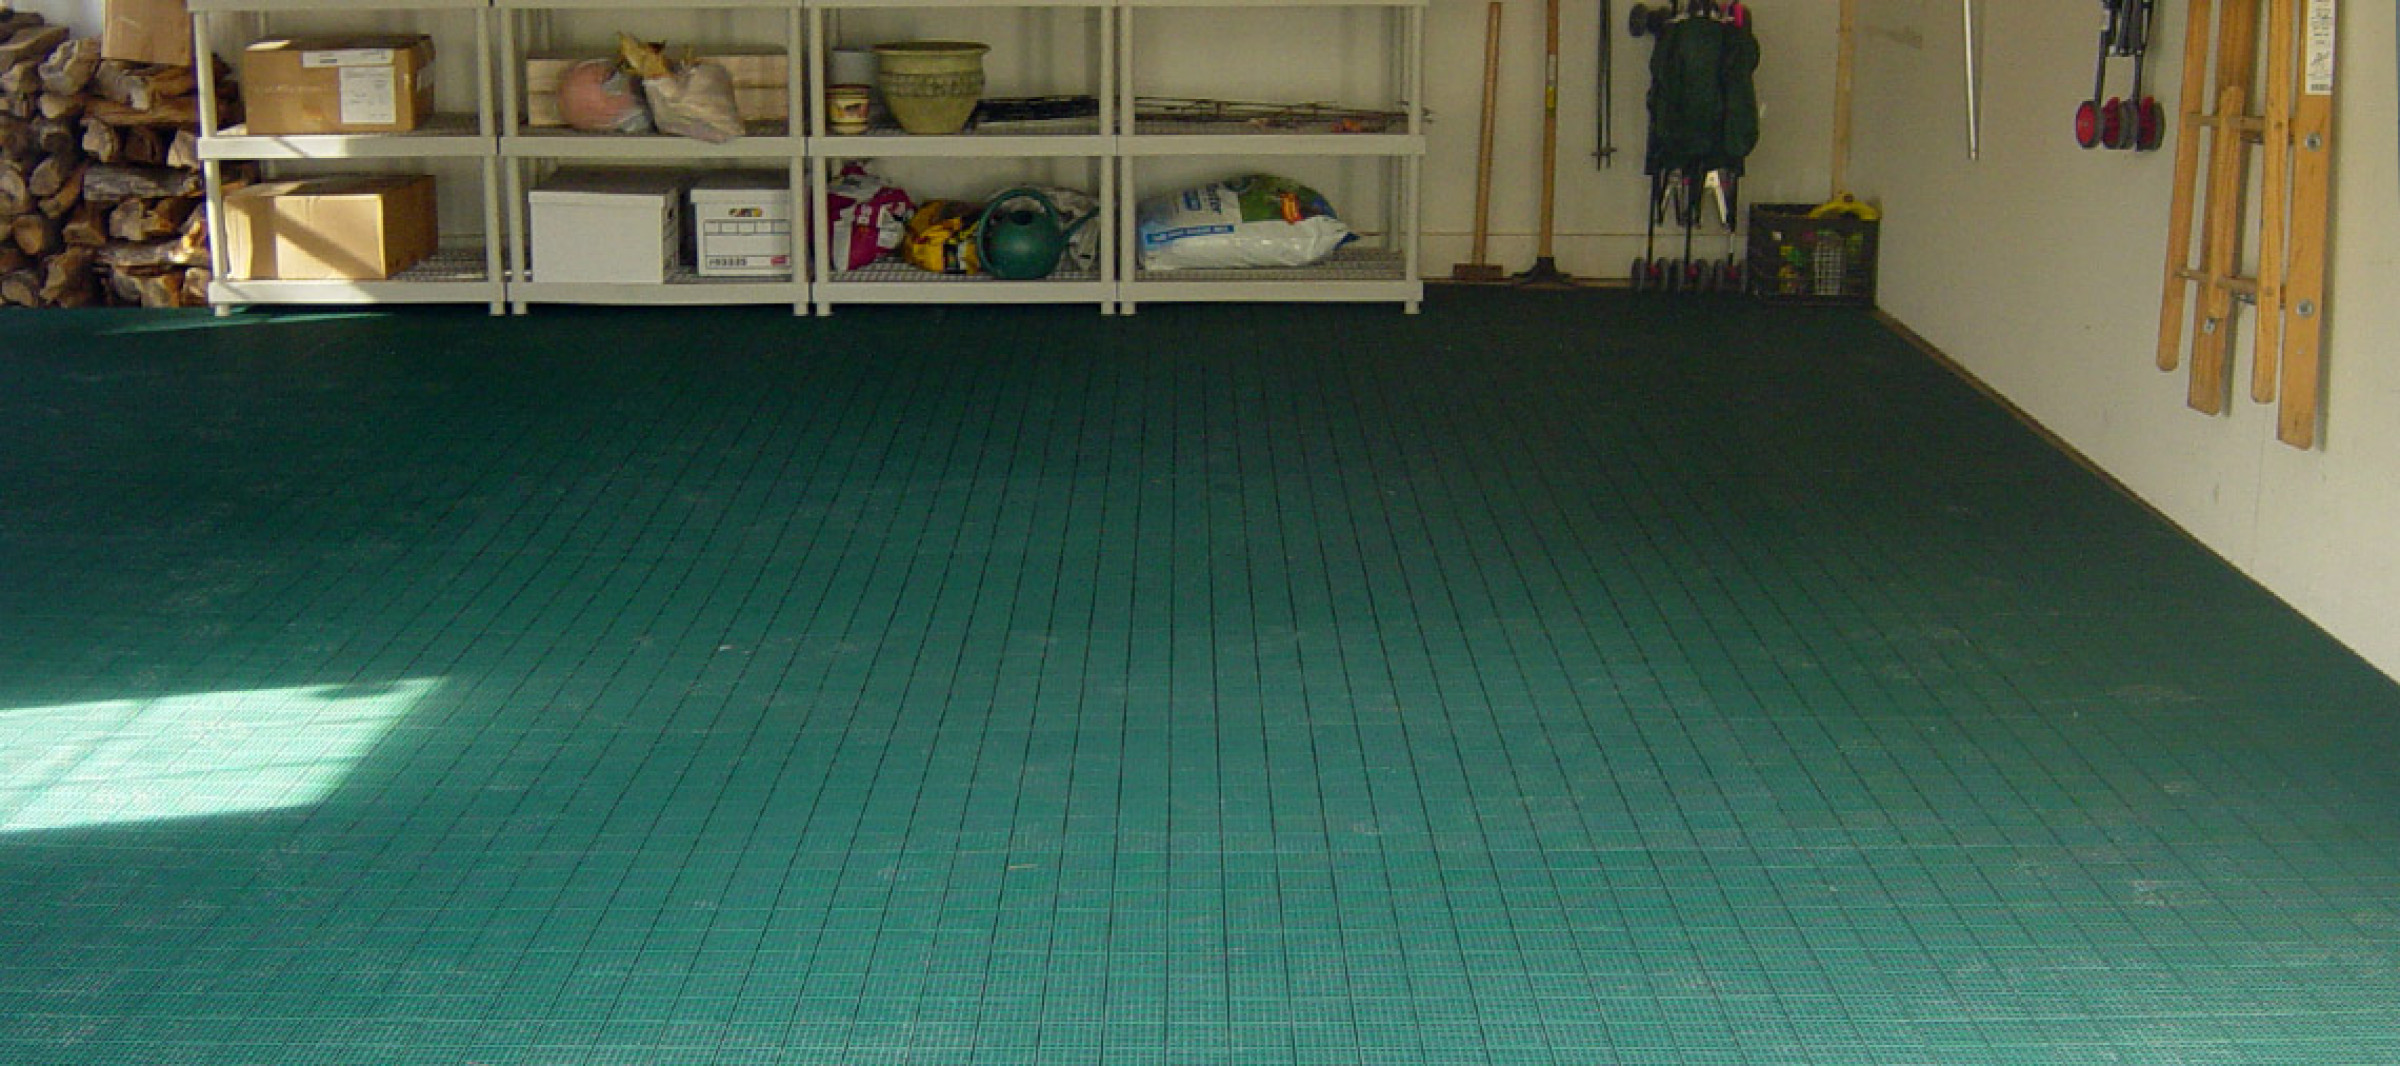 Garage & Workshop Flooring